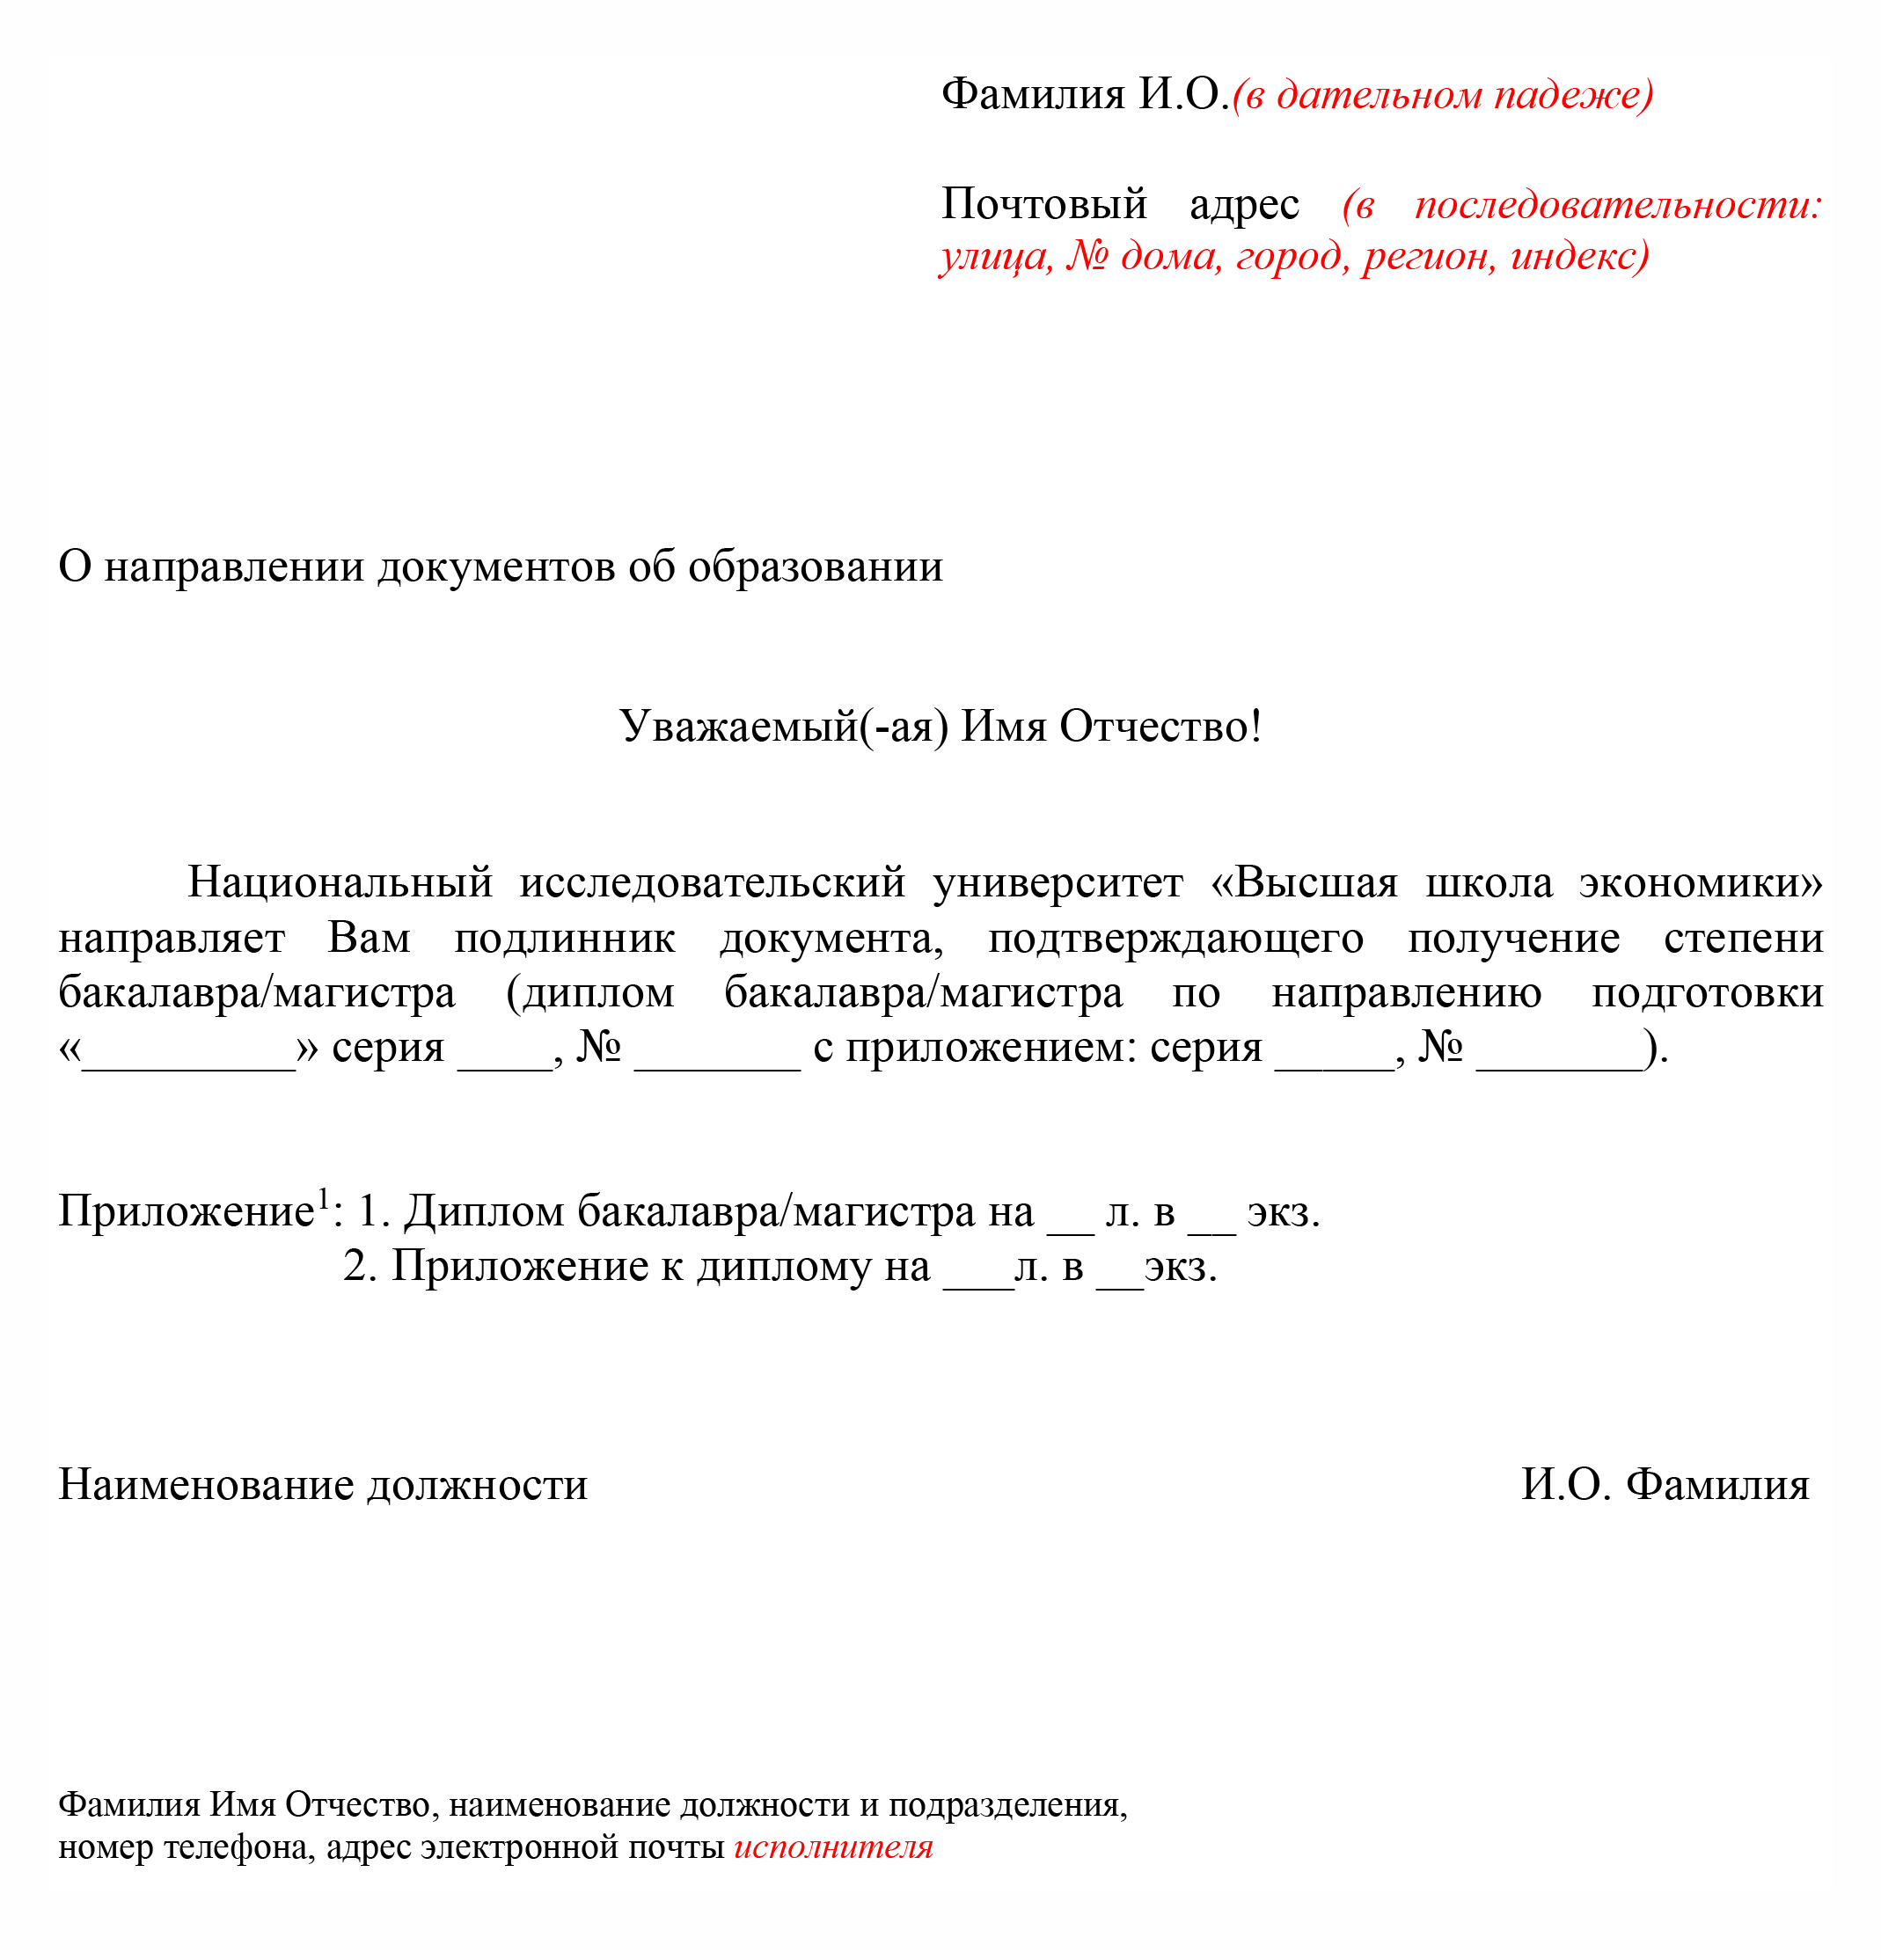 Как проходит подтверждение иностранного диплома в России